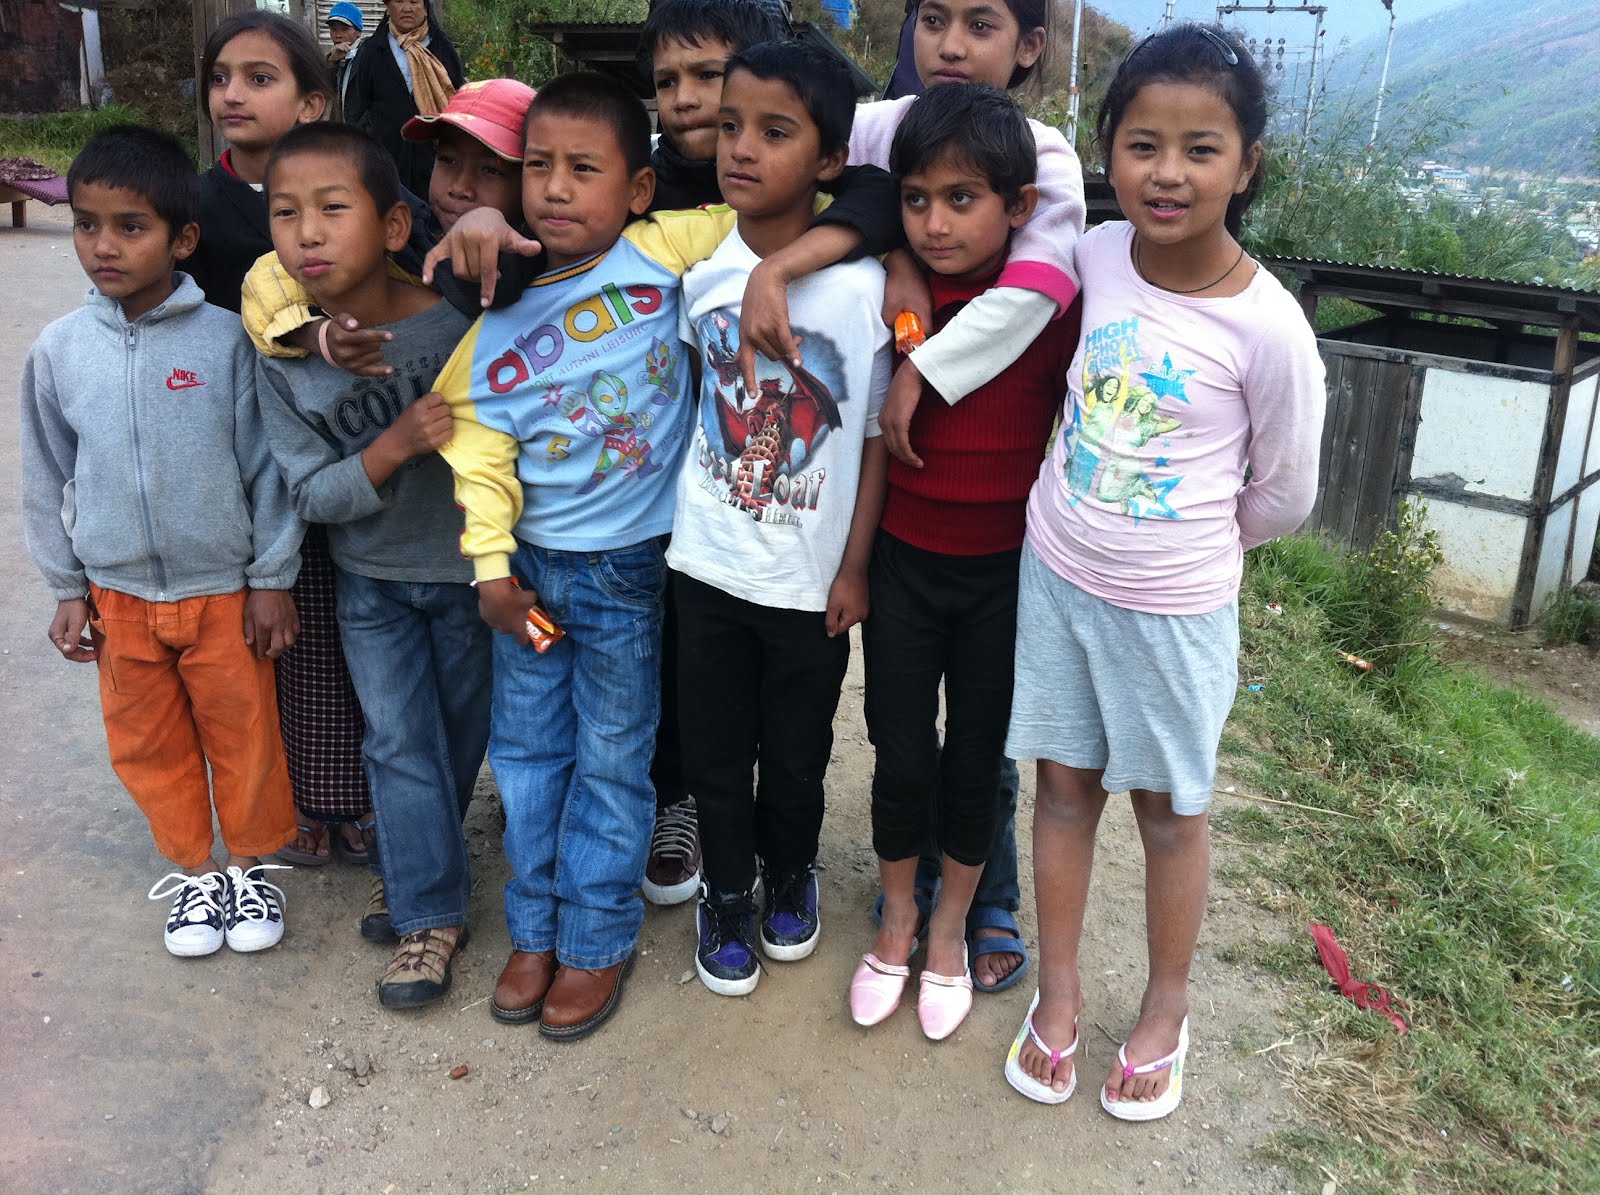 Šťastné děti s renovovanými botami. Fotografie organizace Help Shoe Bhutan, použita se svolením.